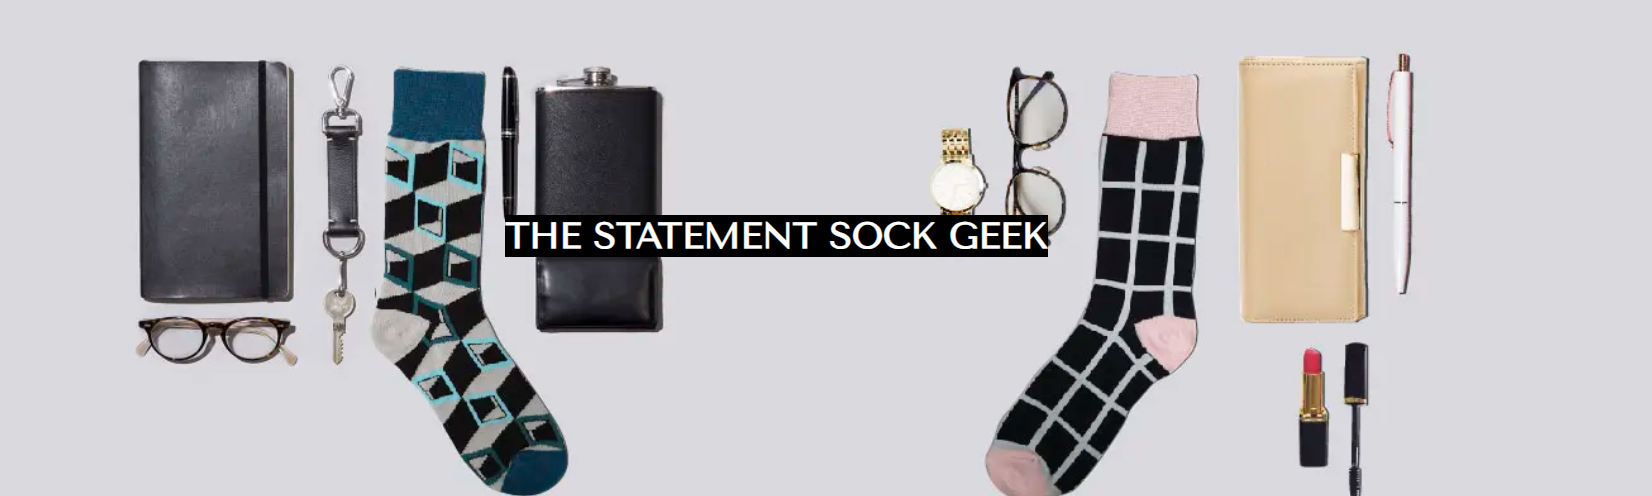 Statement socks for men